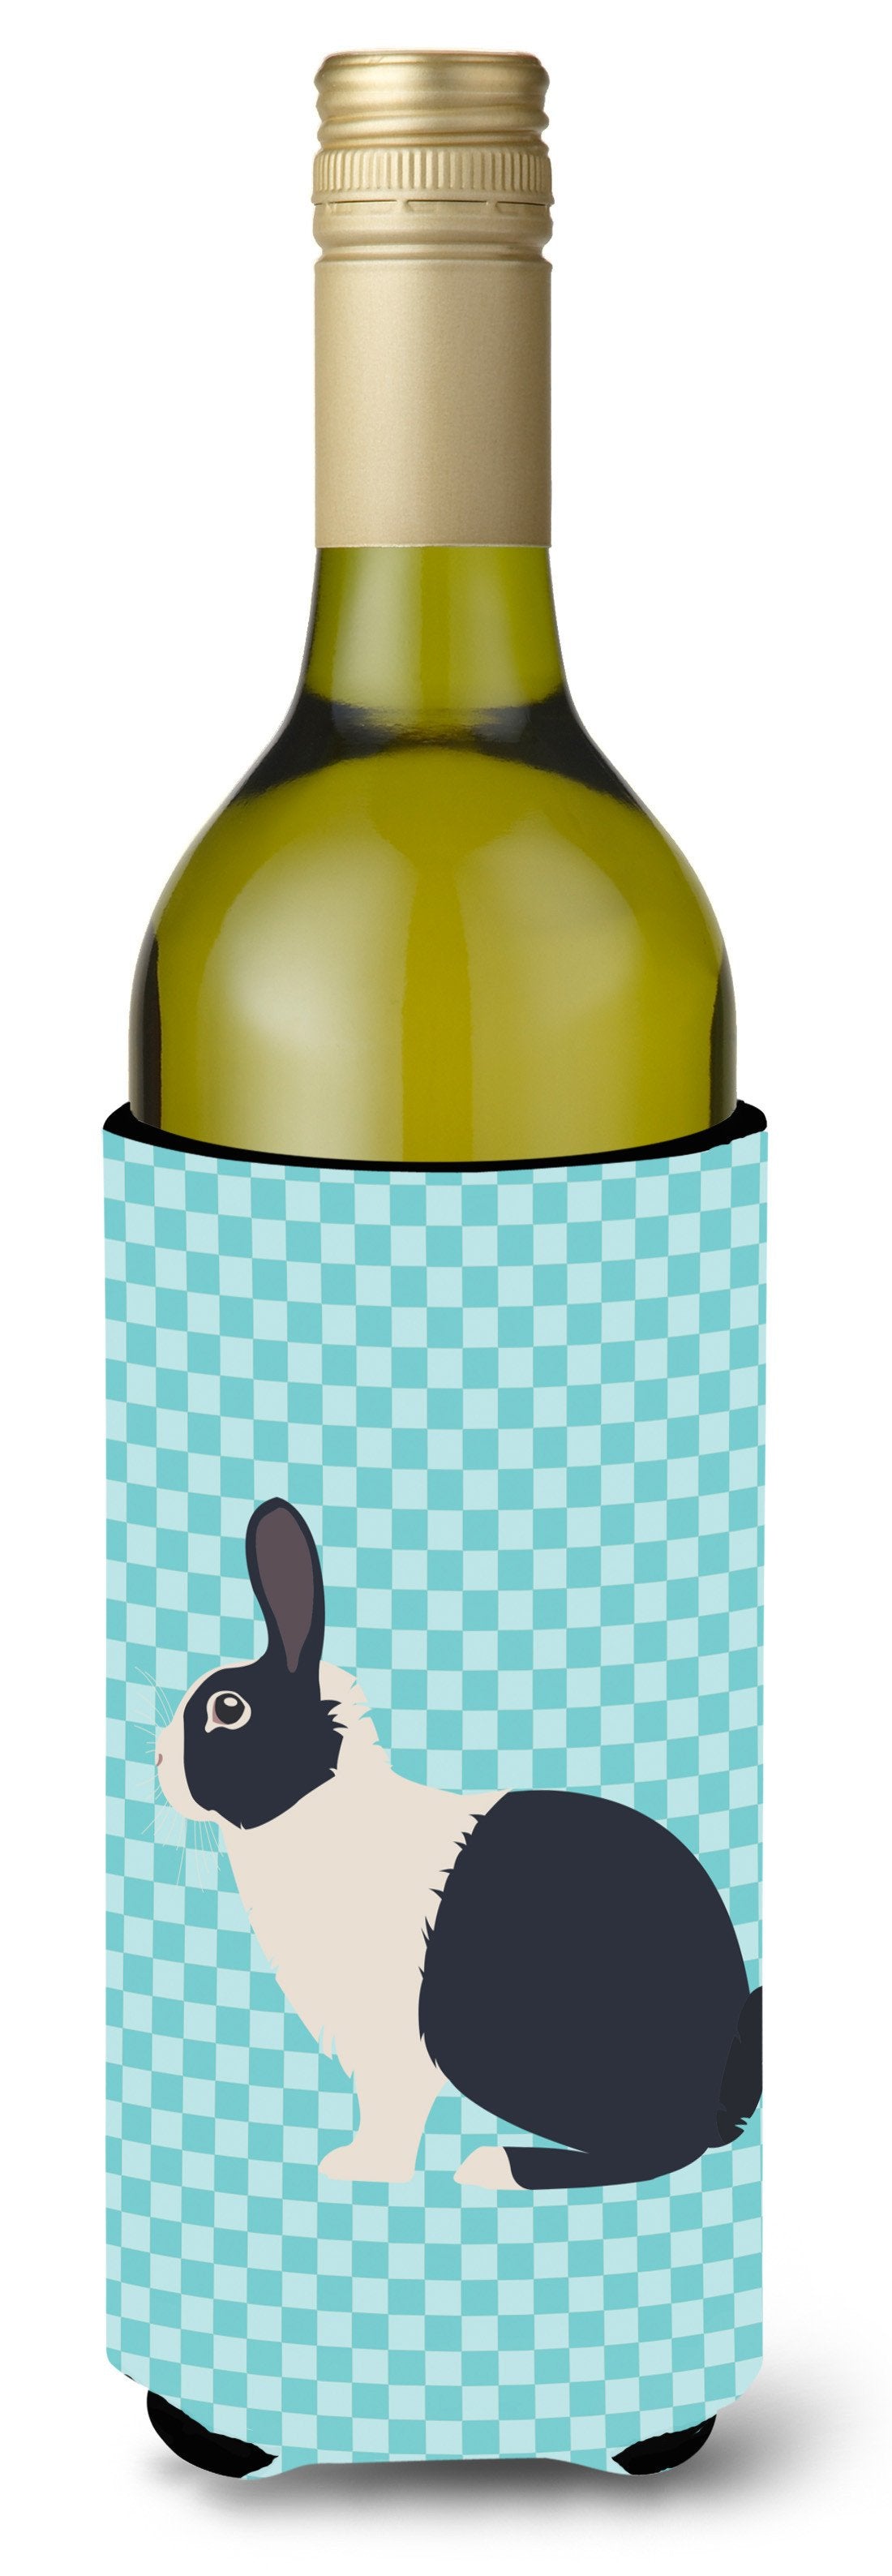 Dutch Rabbit Blue Check Wine Bottle Beverge Insulator Hugger BB8132LITERK by Caroline's Treasures